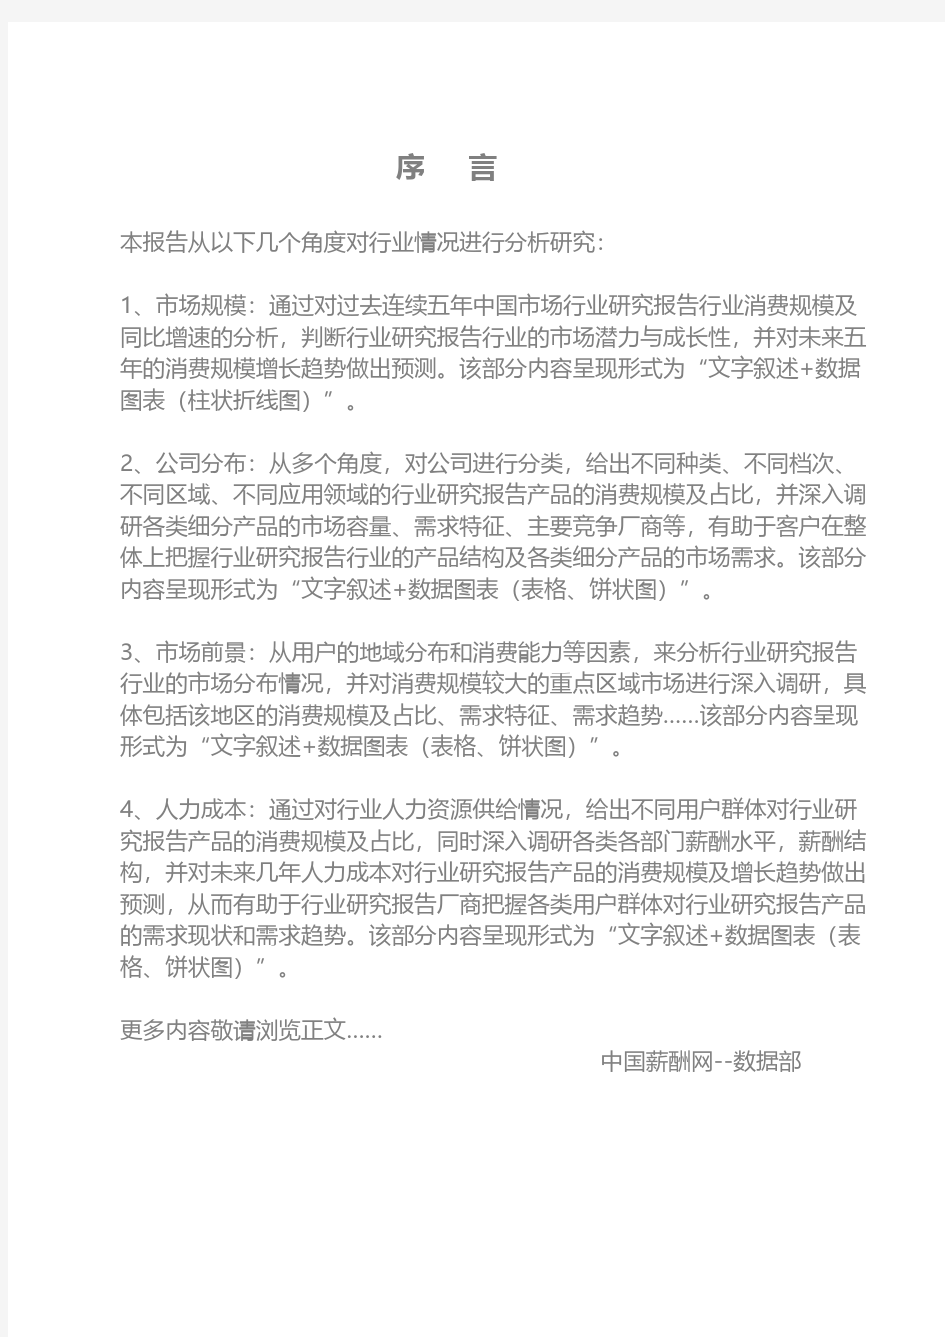 2019年上海青浦工业园区投资环境报告